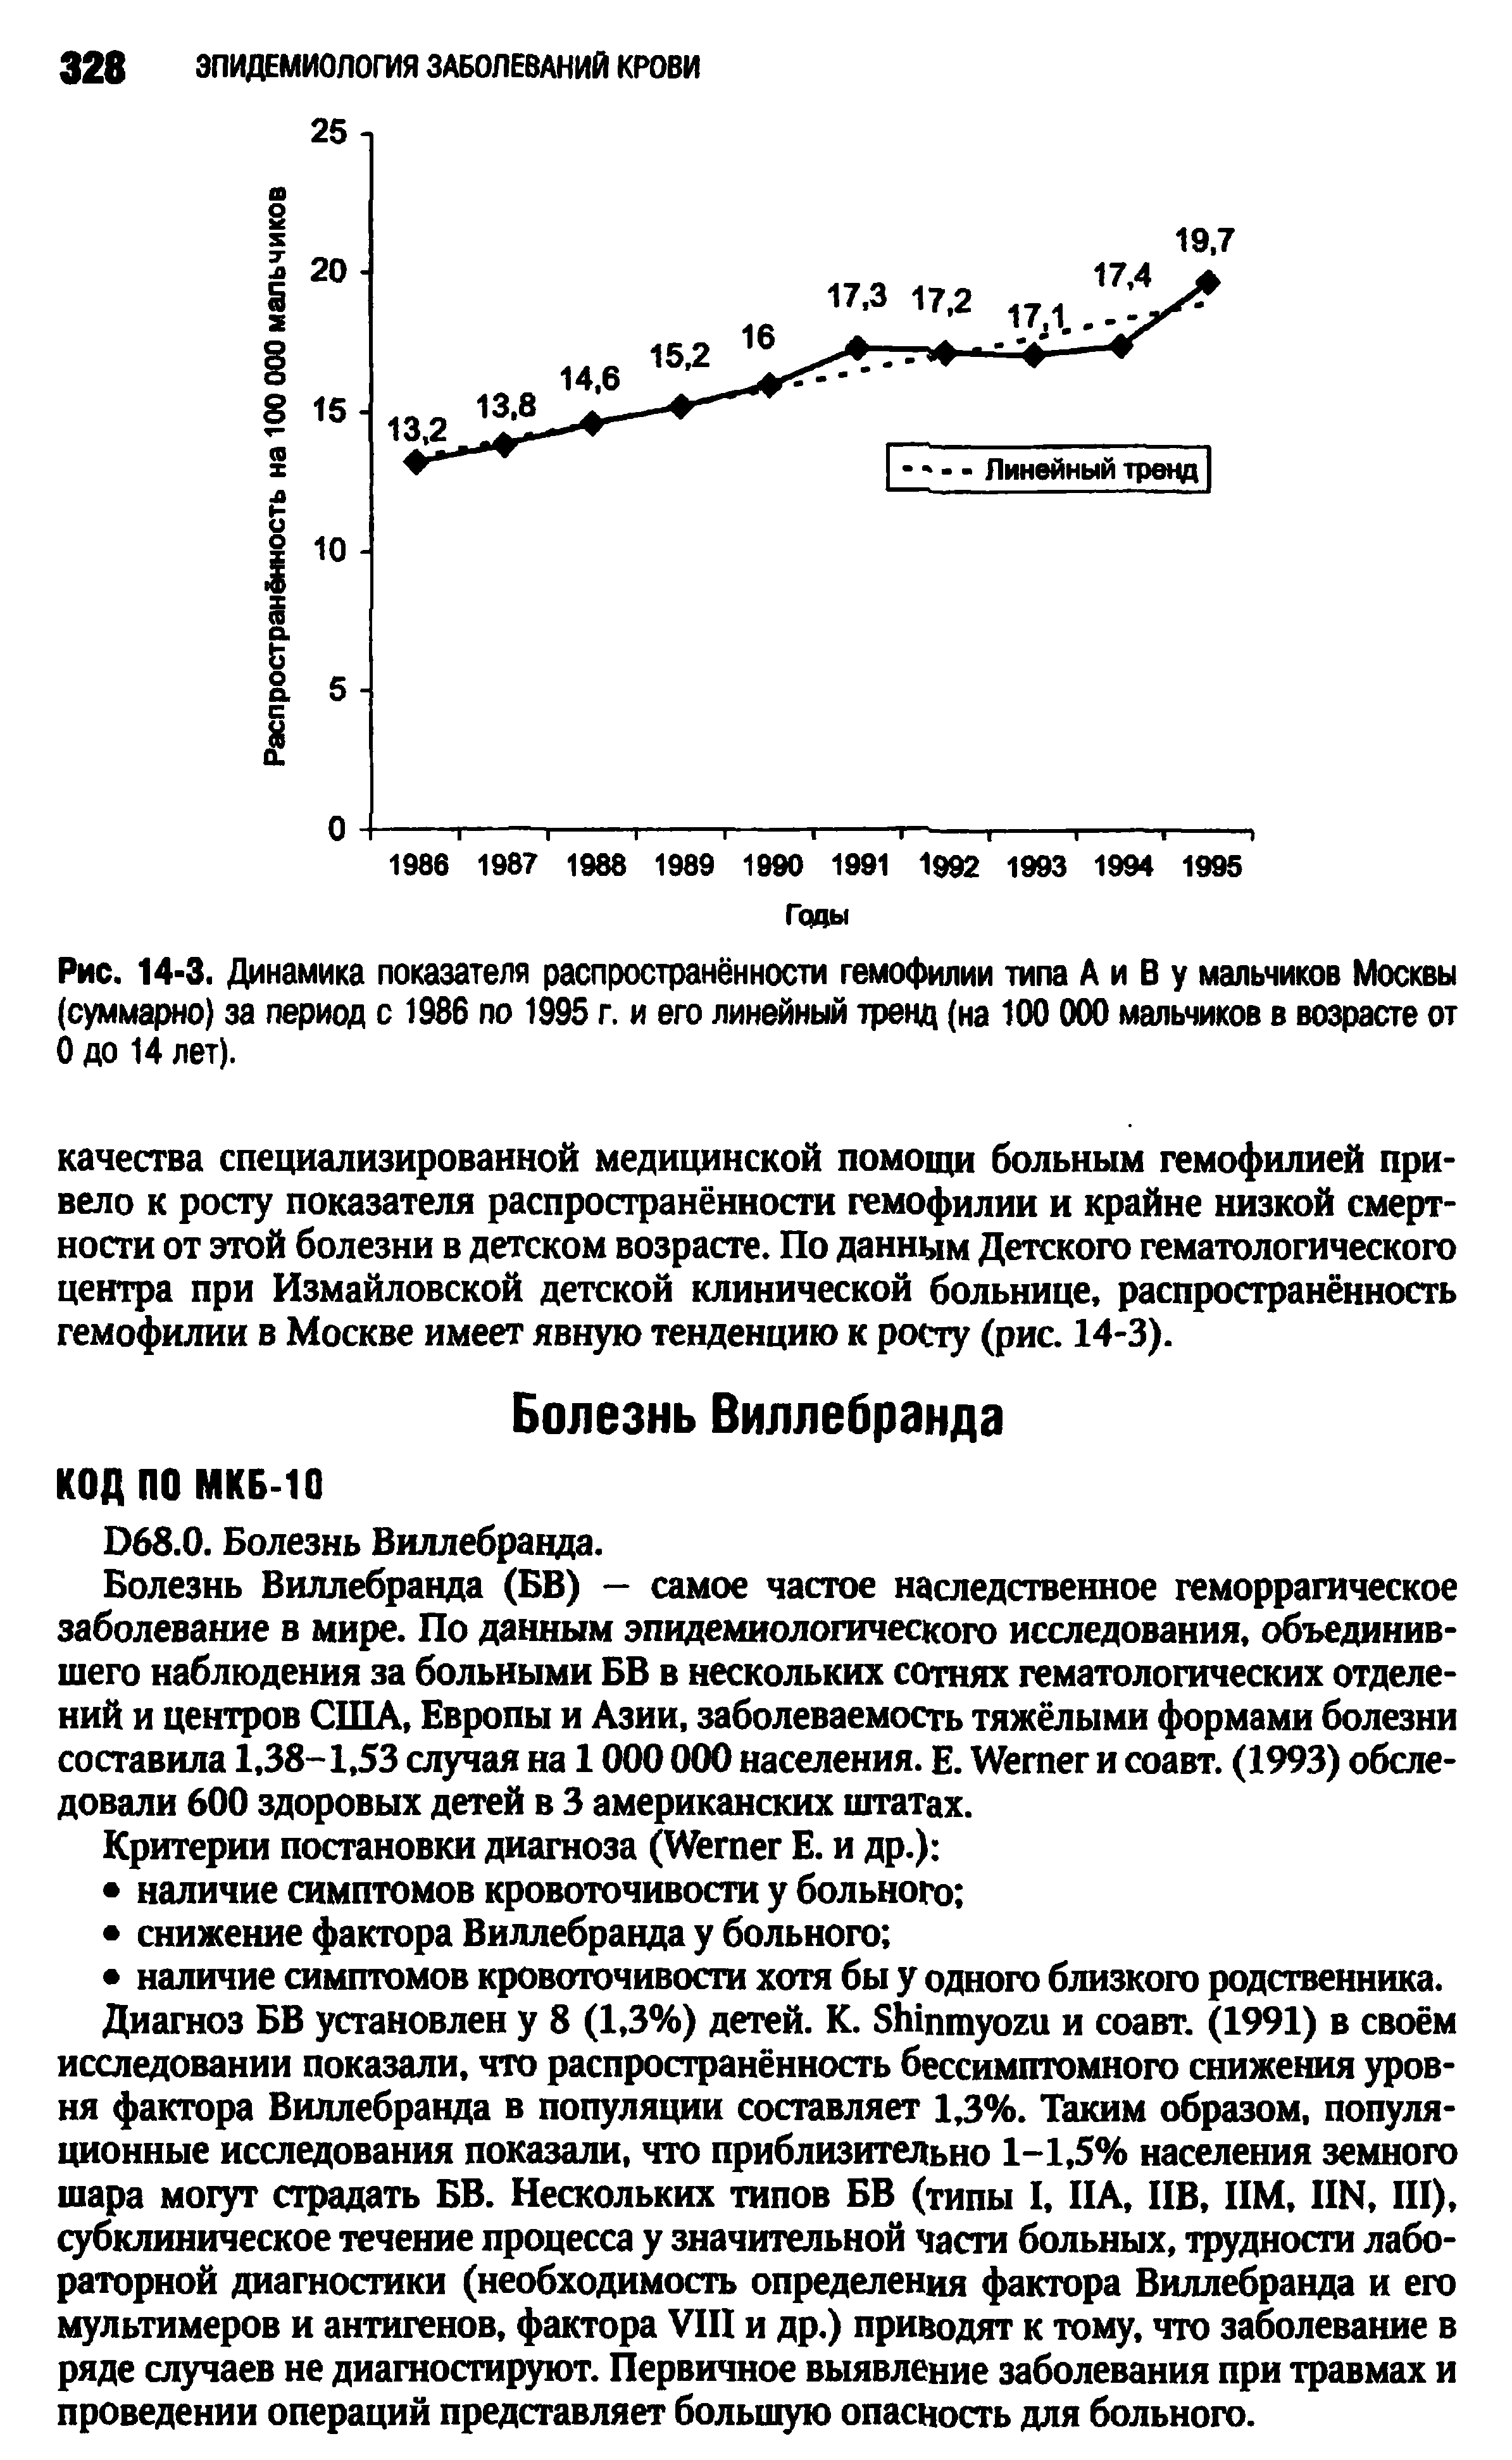 Рис. 14-3. Динамика показателя распространённости гемофилии типа А и В у мальчиков Москвы (суммарно) за период с 1986 по 1995 г. и его линейный тренд (на 100 000 мальчиков в возрасте от 0 до 14 лет).